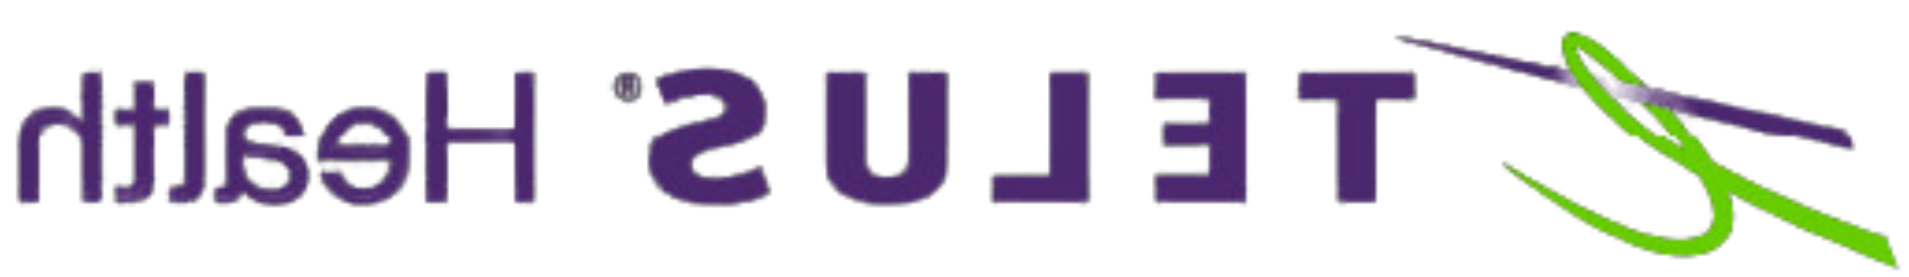 Telus Health logo